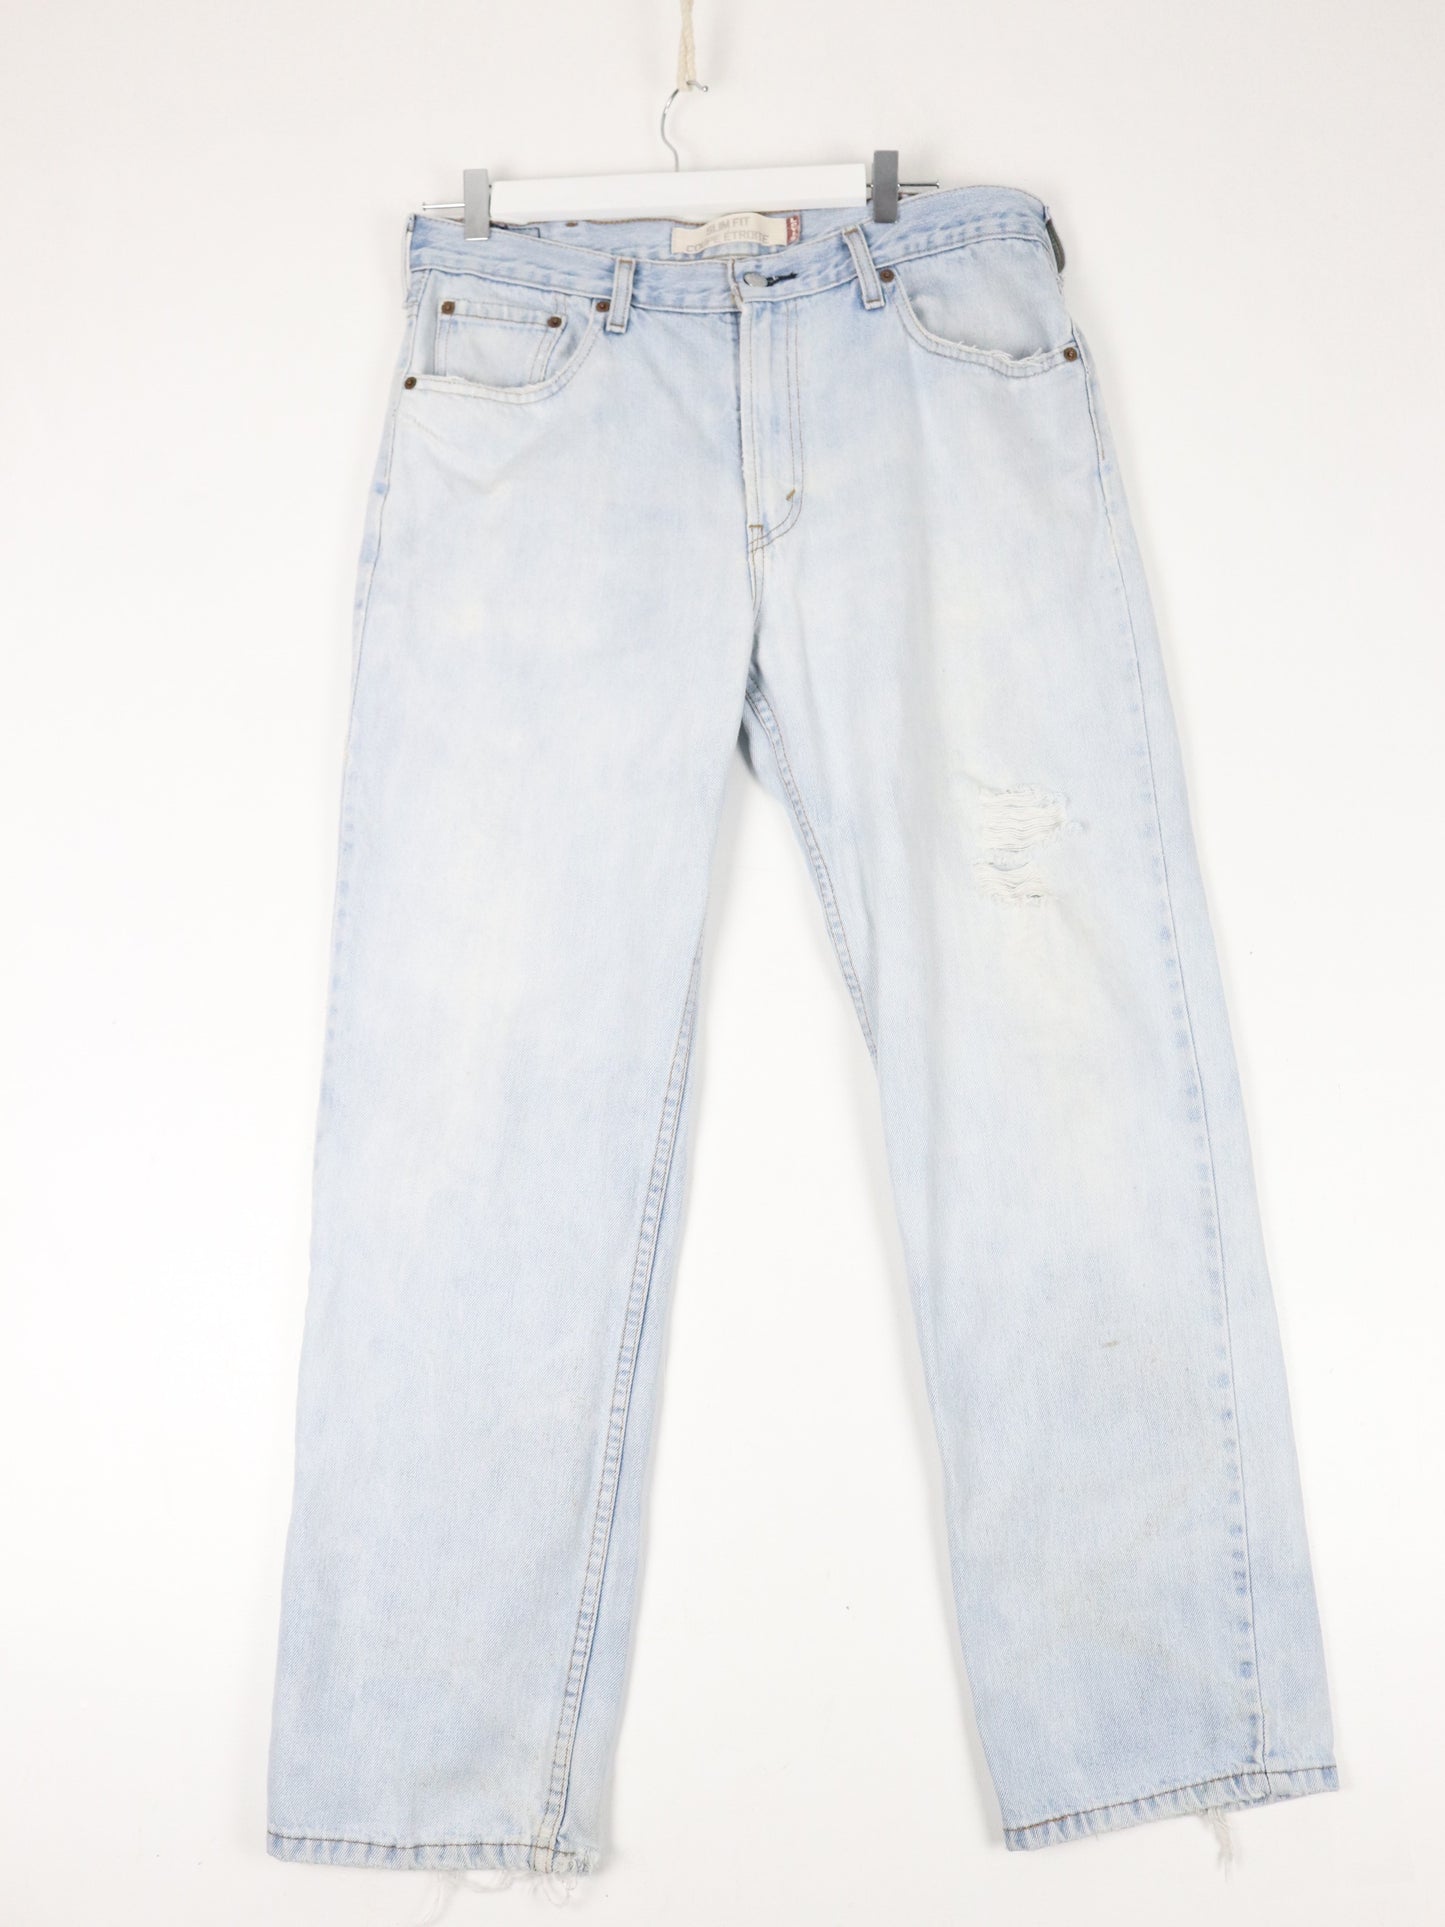 Vintage Levi's Pants Mens 35 x 29 Blue 516 Slim Fit Denim Jeans